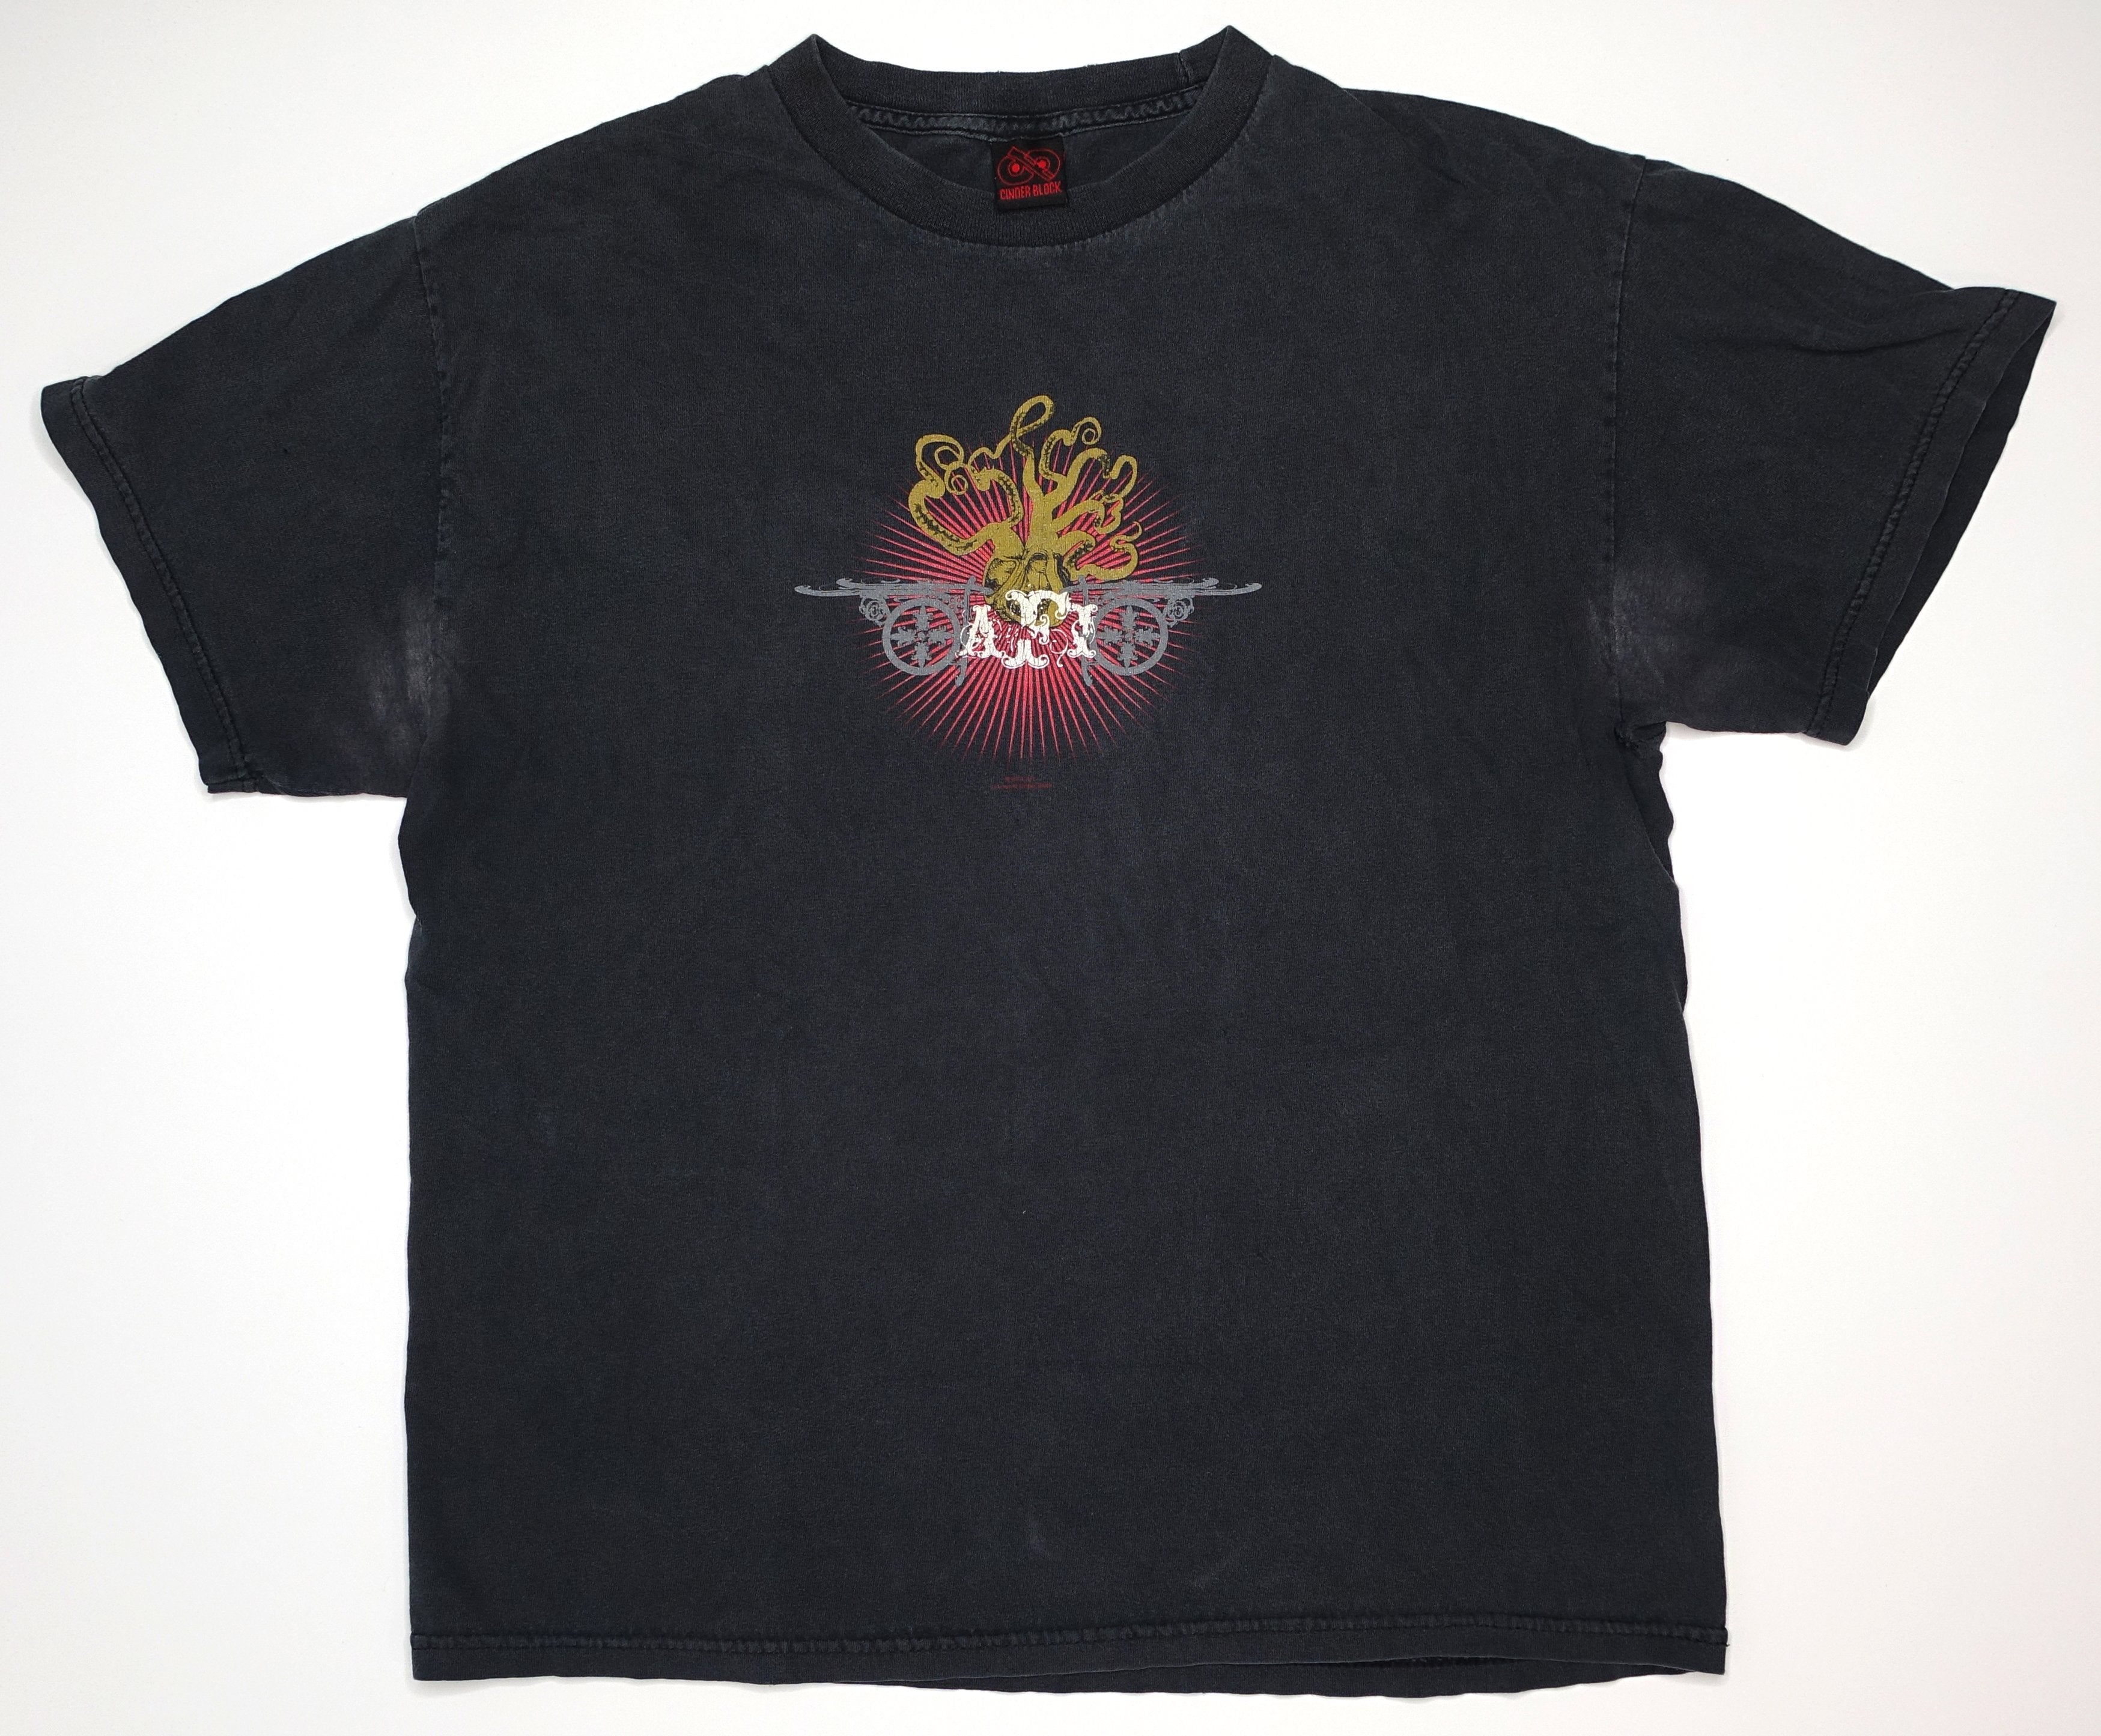 AFI - Octopus 2004 Tour Shirt Size XL